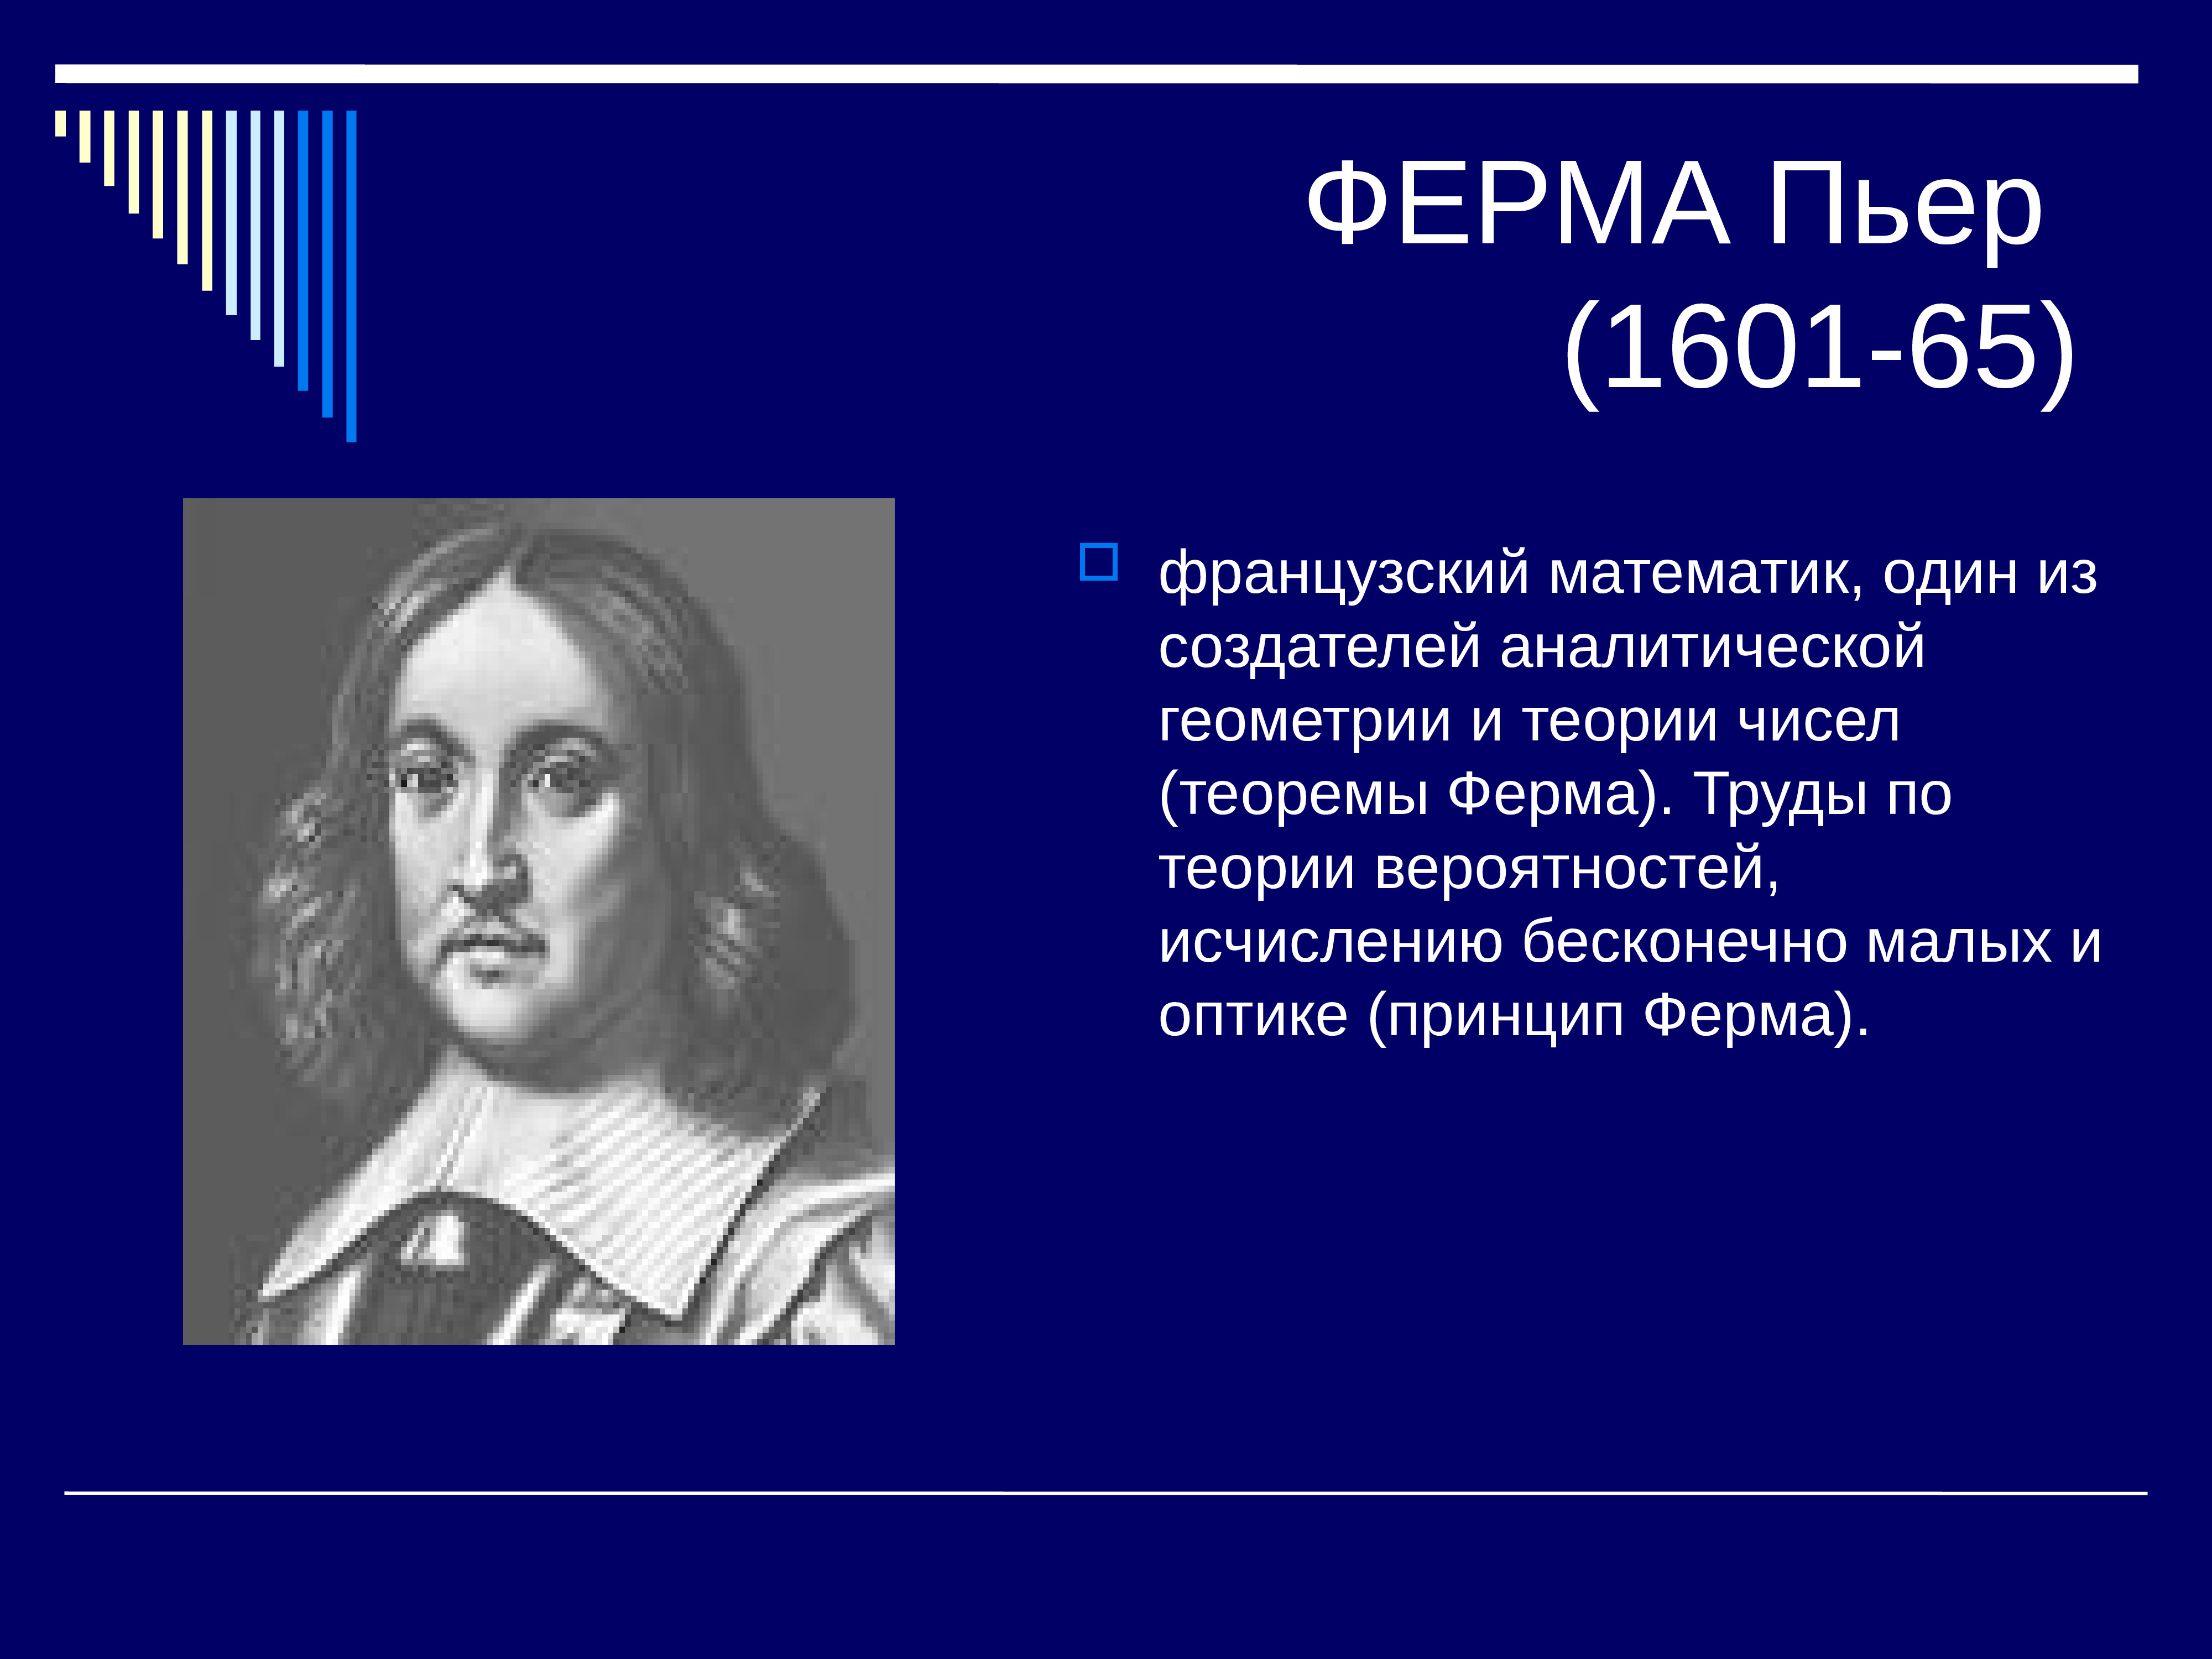 Про великого математика. Пьер ферма (1601-1665). Великие математики. Известные ученые математики. Великий математик.